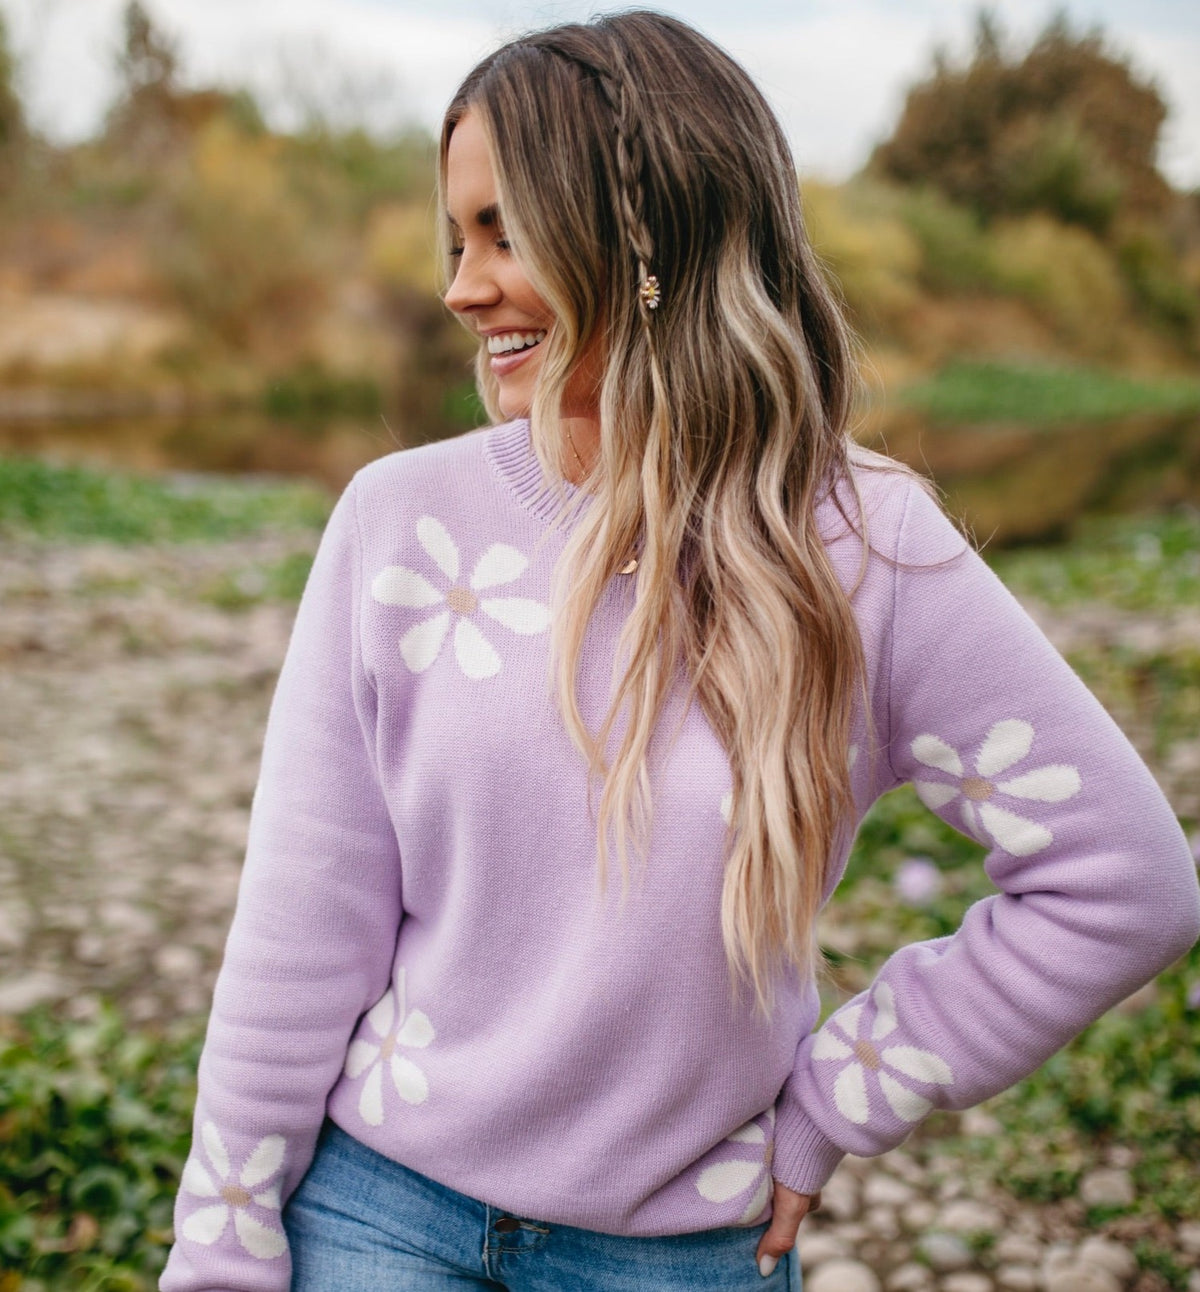 Women&#39;s Purple Flower Sweater